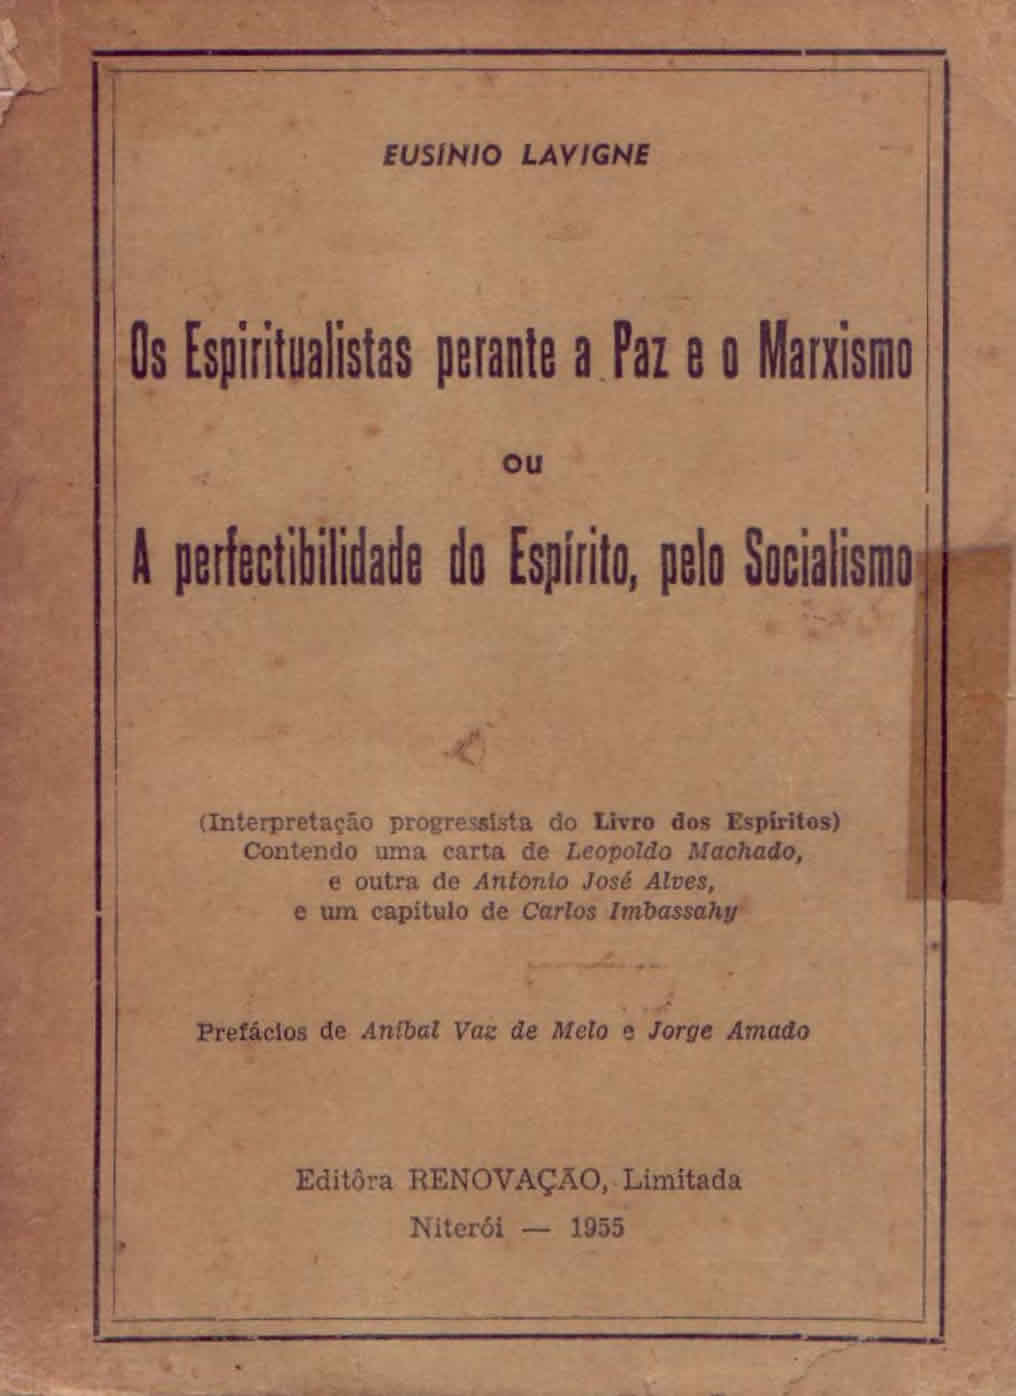 Os Versos de Ouro de Pitágoras, PDF, Imortalidade